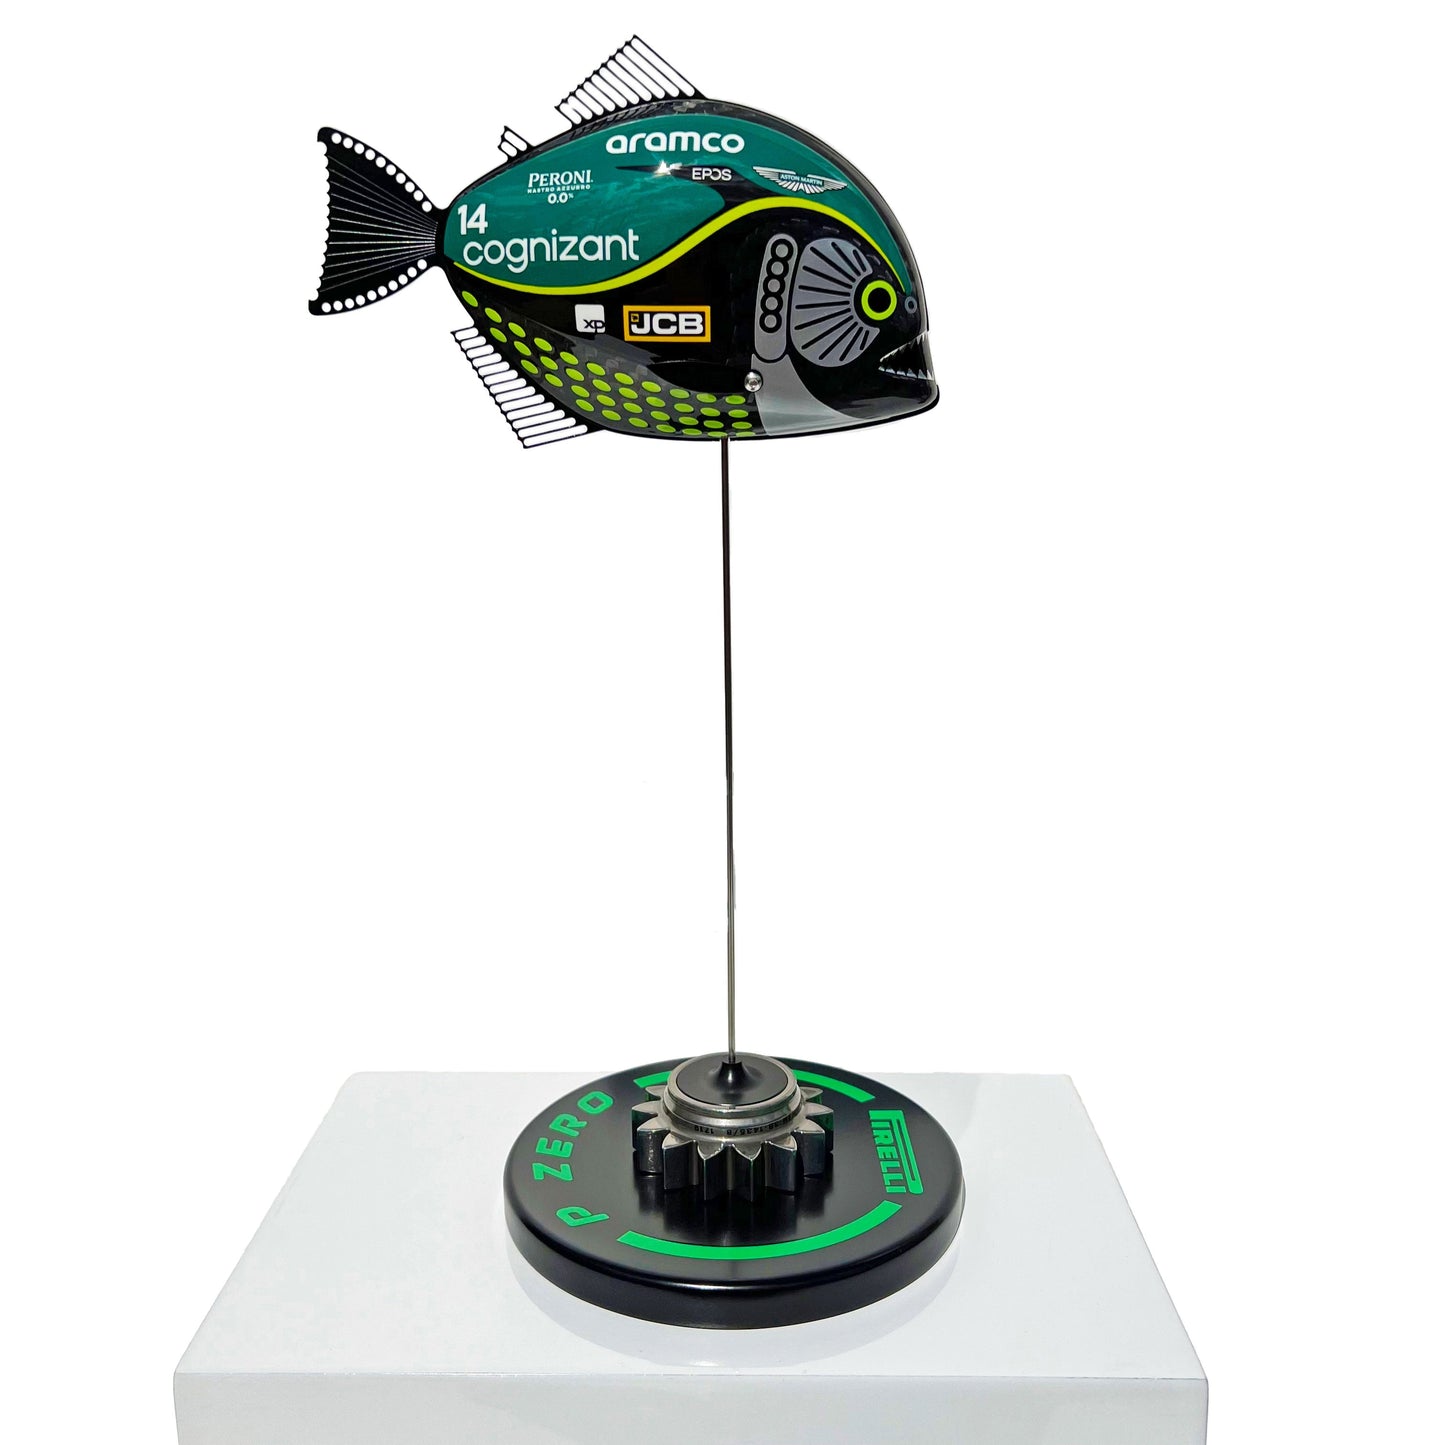 Carbon Fibre Piranha sculpture with 2023 Aston Martin Formula One Livery.